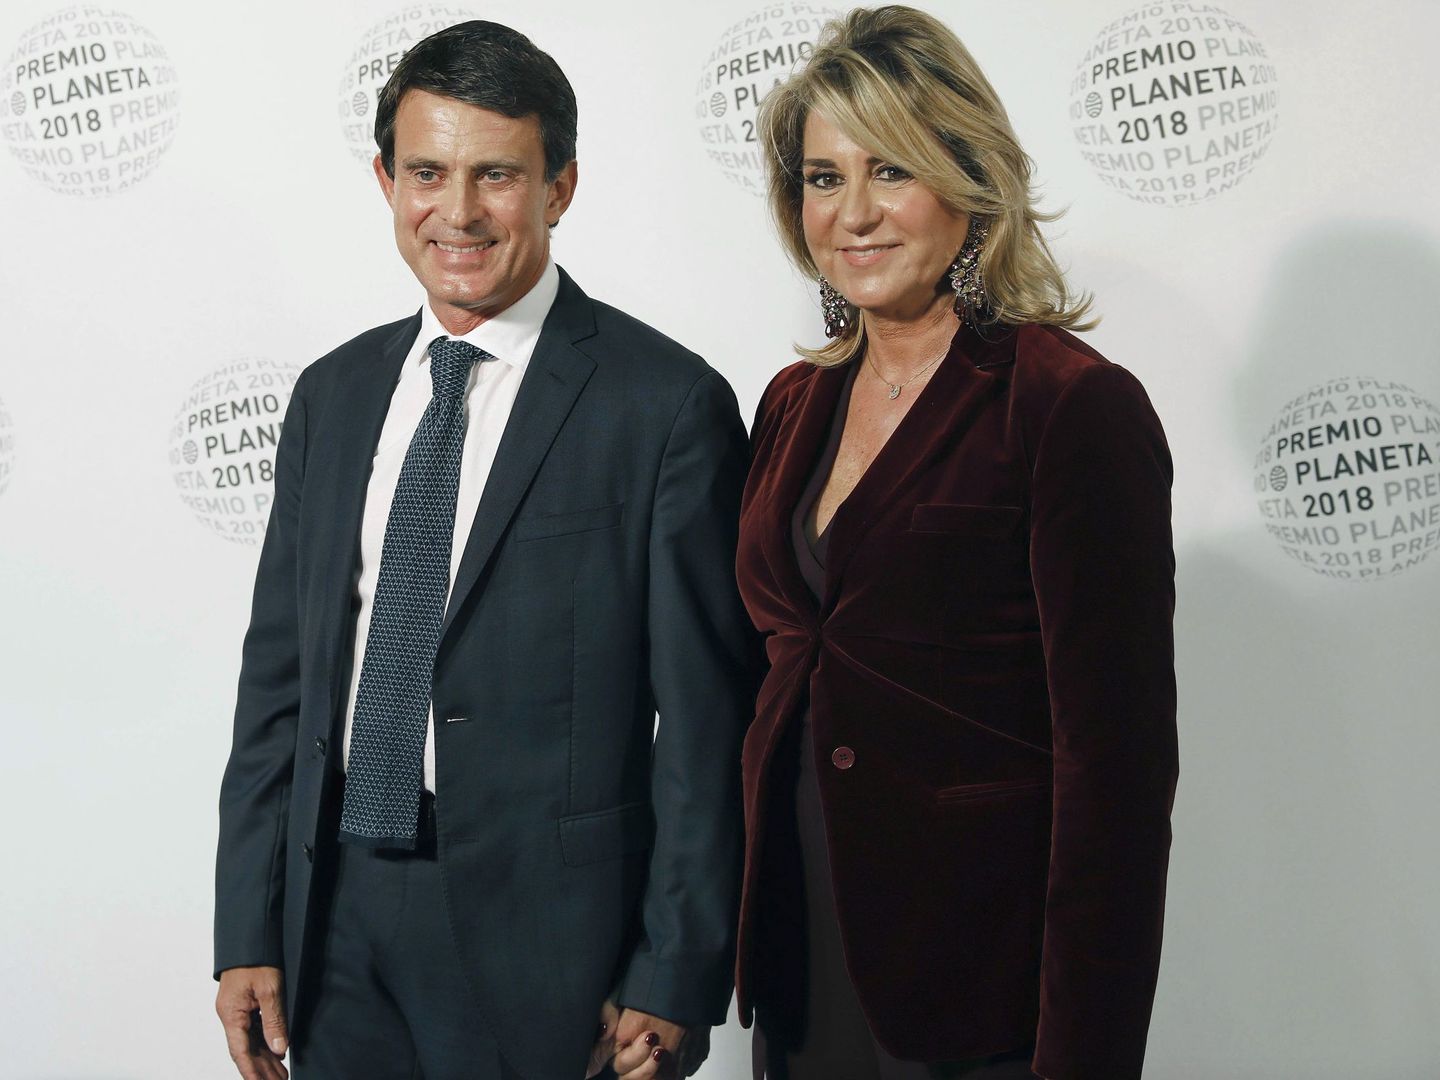 Manuel Valls y su pareja, Susana Gallardo, en la fiesta del Premio Planeta. (EFE) 